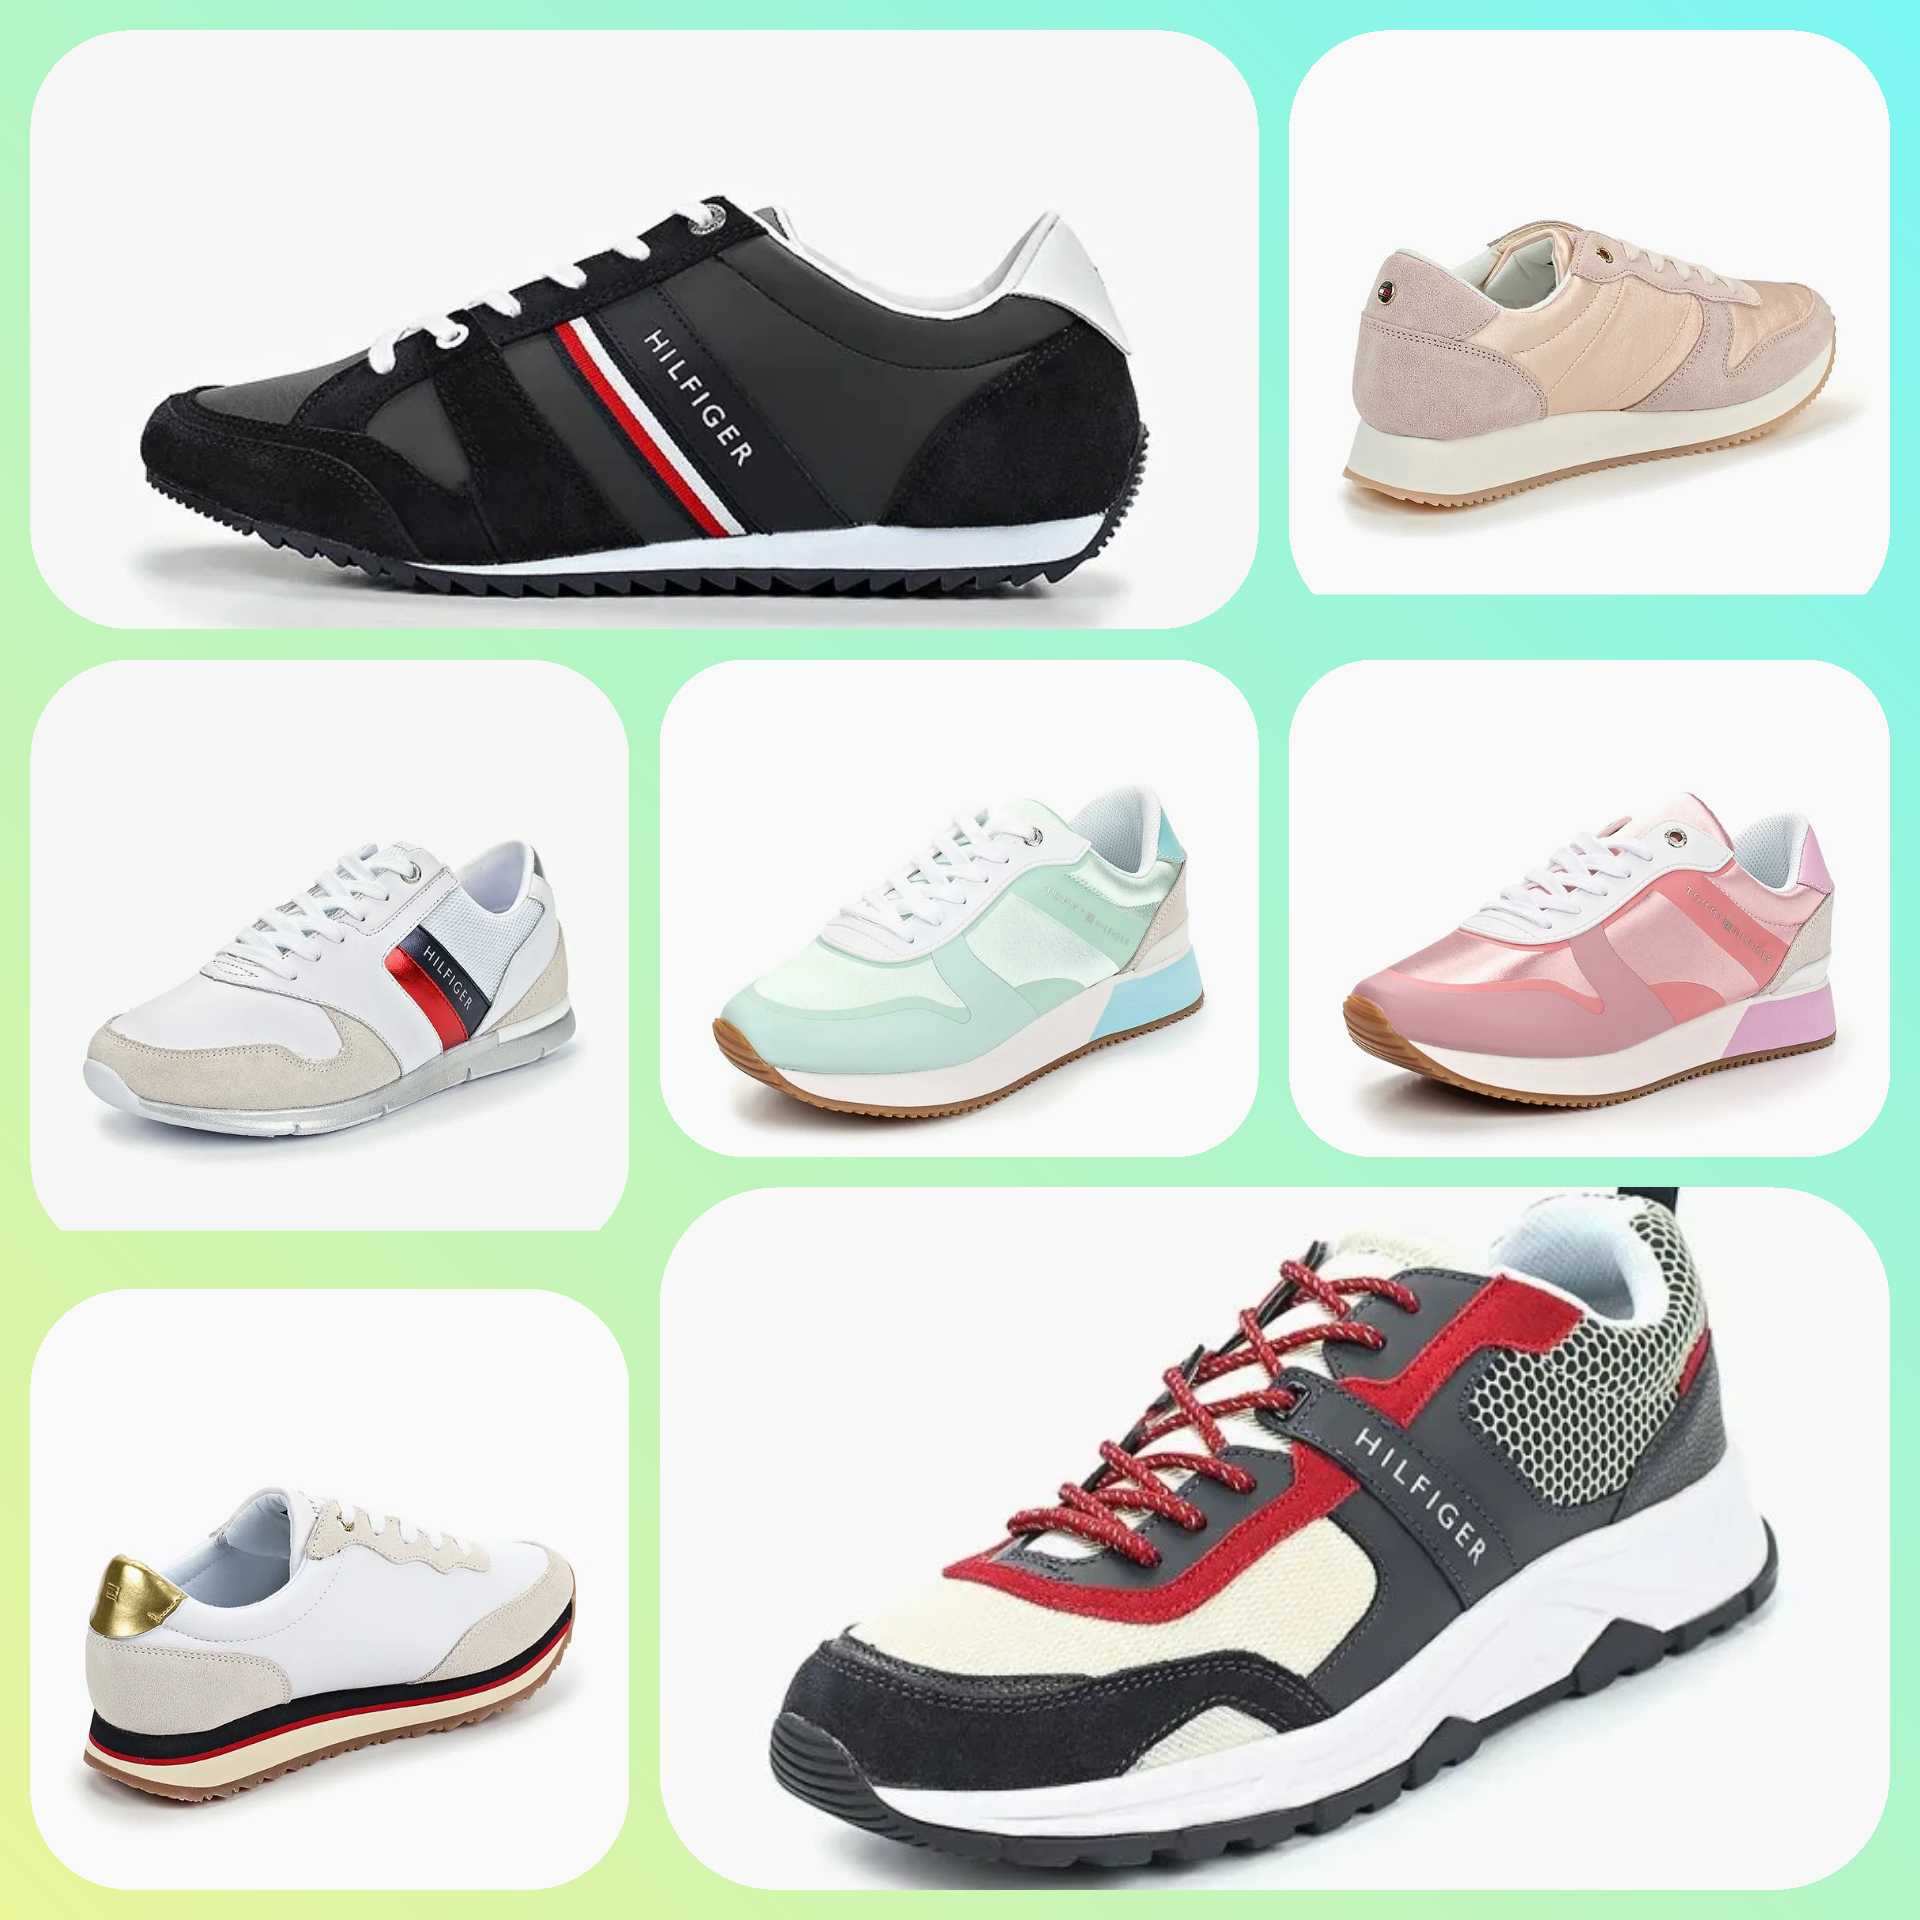 Лучшие модели кроссовок для занятий физкультурой: критерии выбора спортивной обуви для ребенка